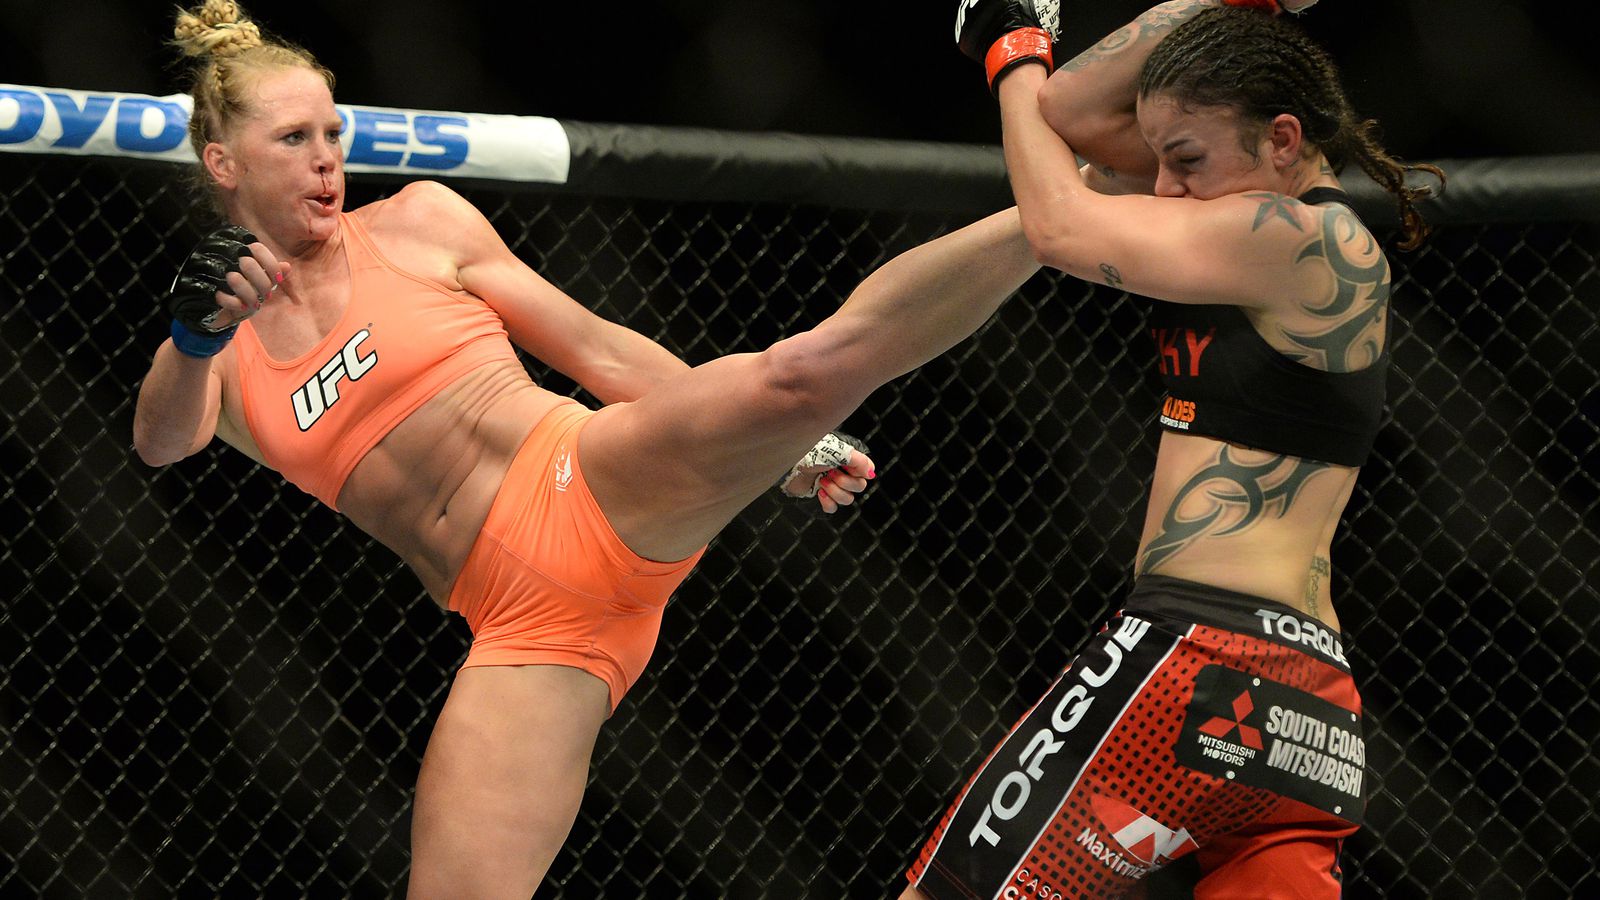 Holly Holm vs Raquel Pennington full fight video highlights from UFC 184 la...